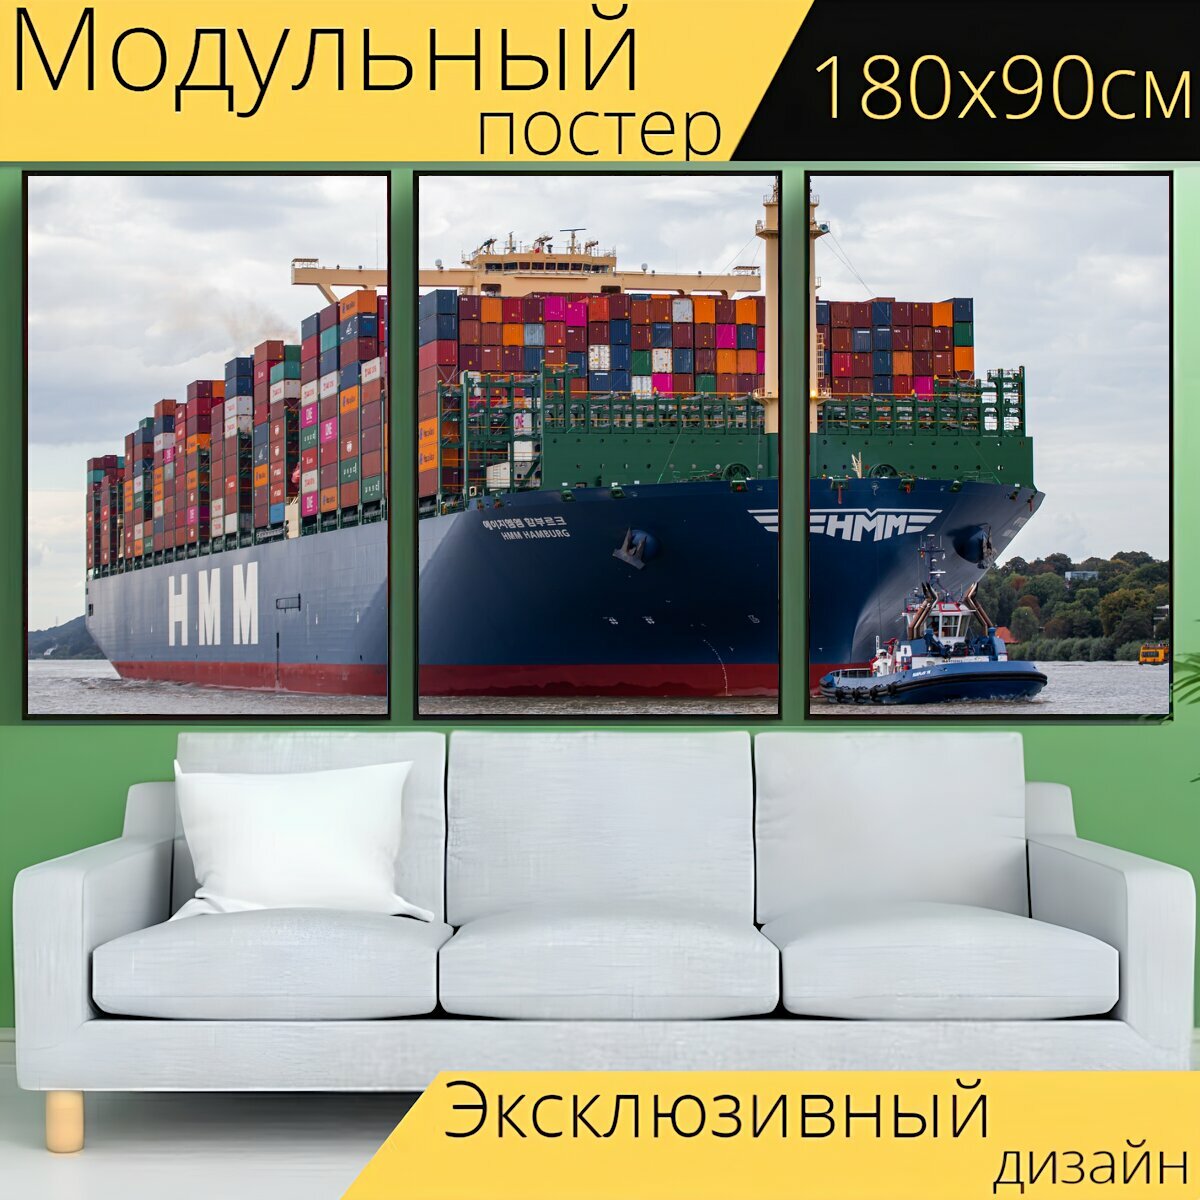 Модульный постер "Судно, контейнеровоз, грузовое судно" 180 x 90 см. для интерьера